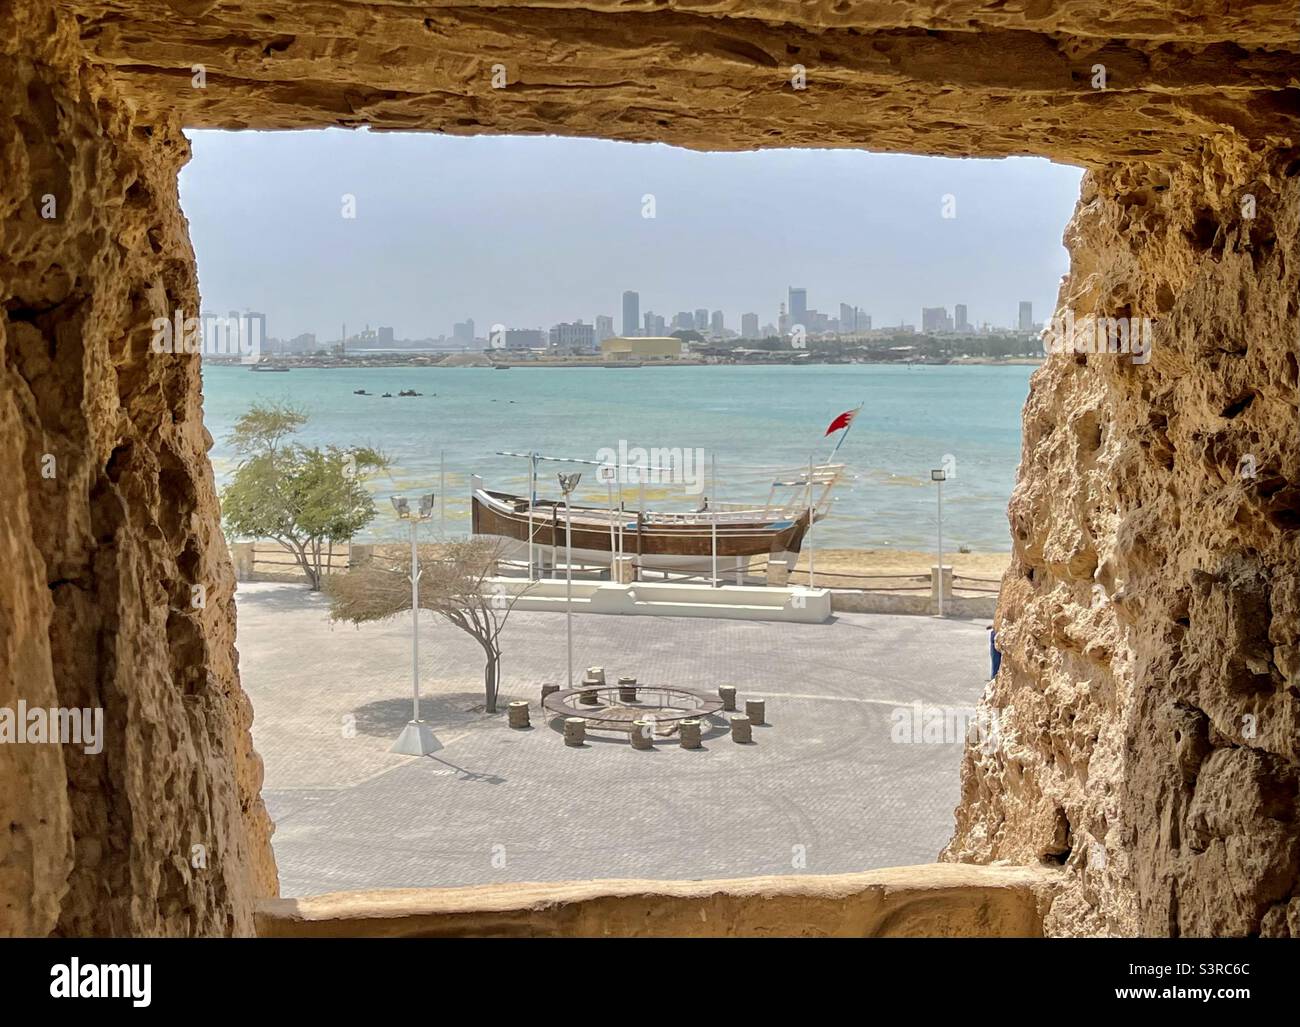 Un bateau amarré avec Manama, Bahreïn en arrière-plan Banque D'Images